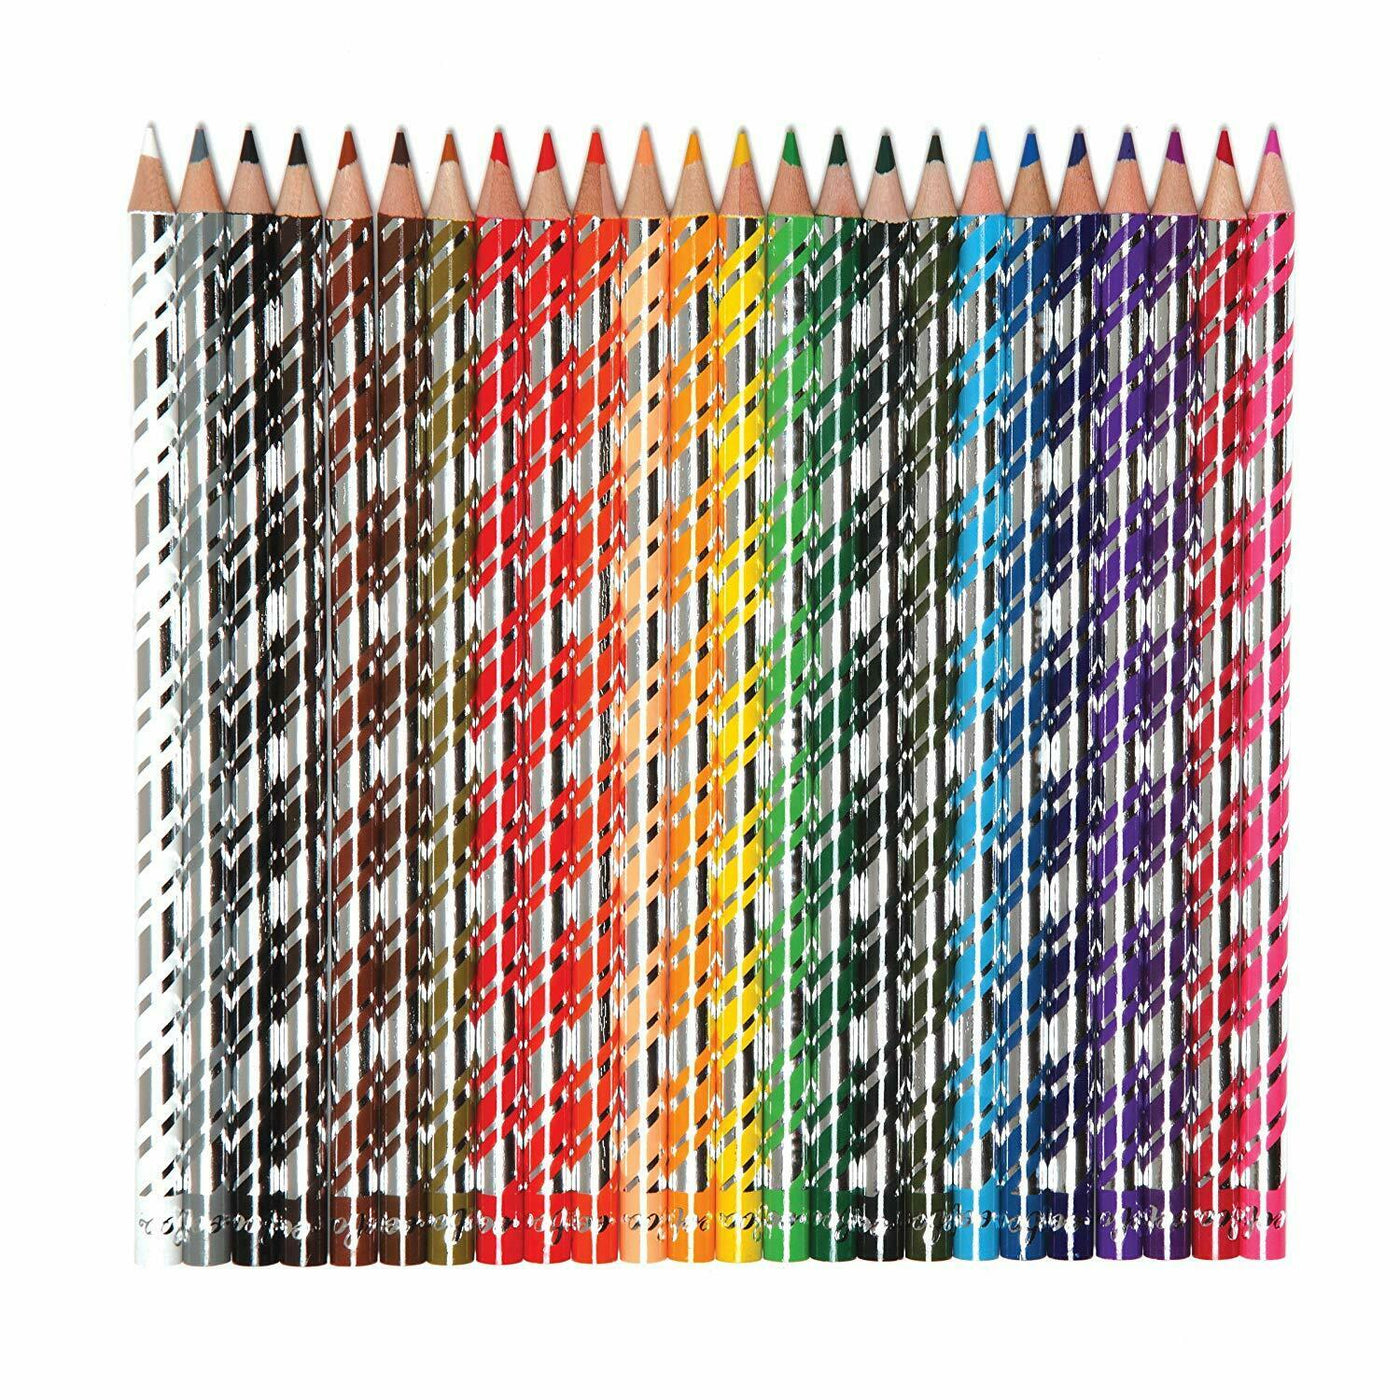 In The Sea 24pc Color Pencils